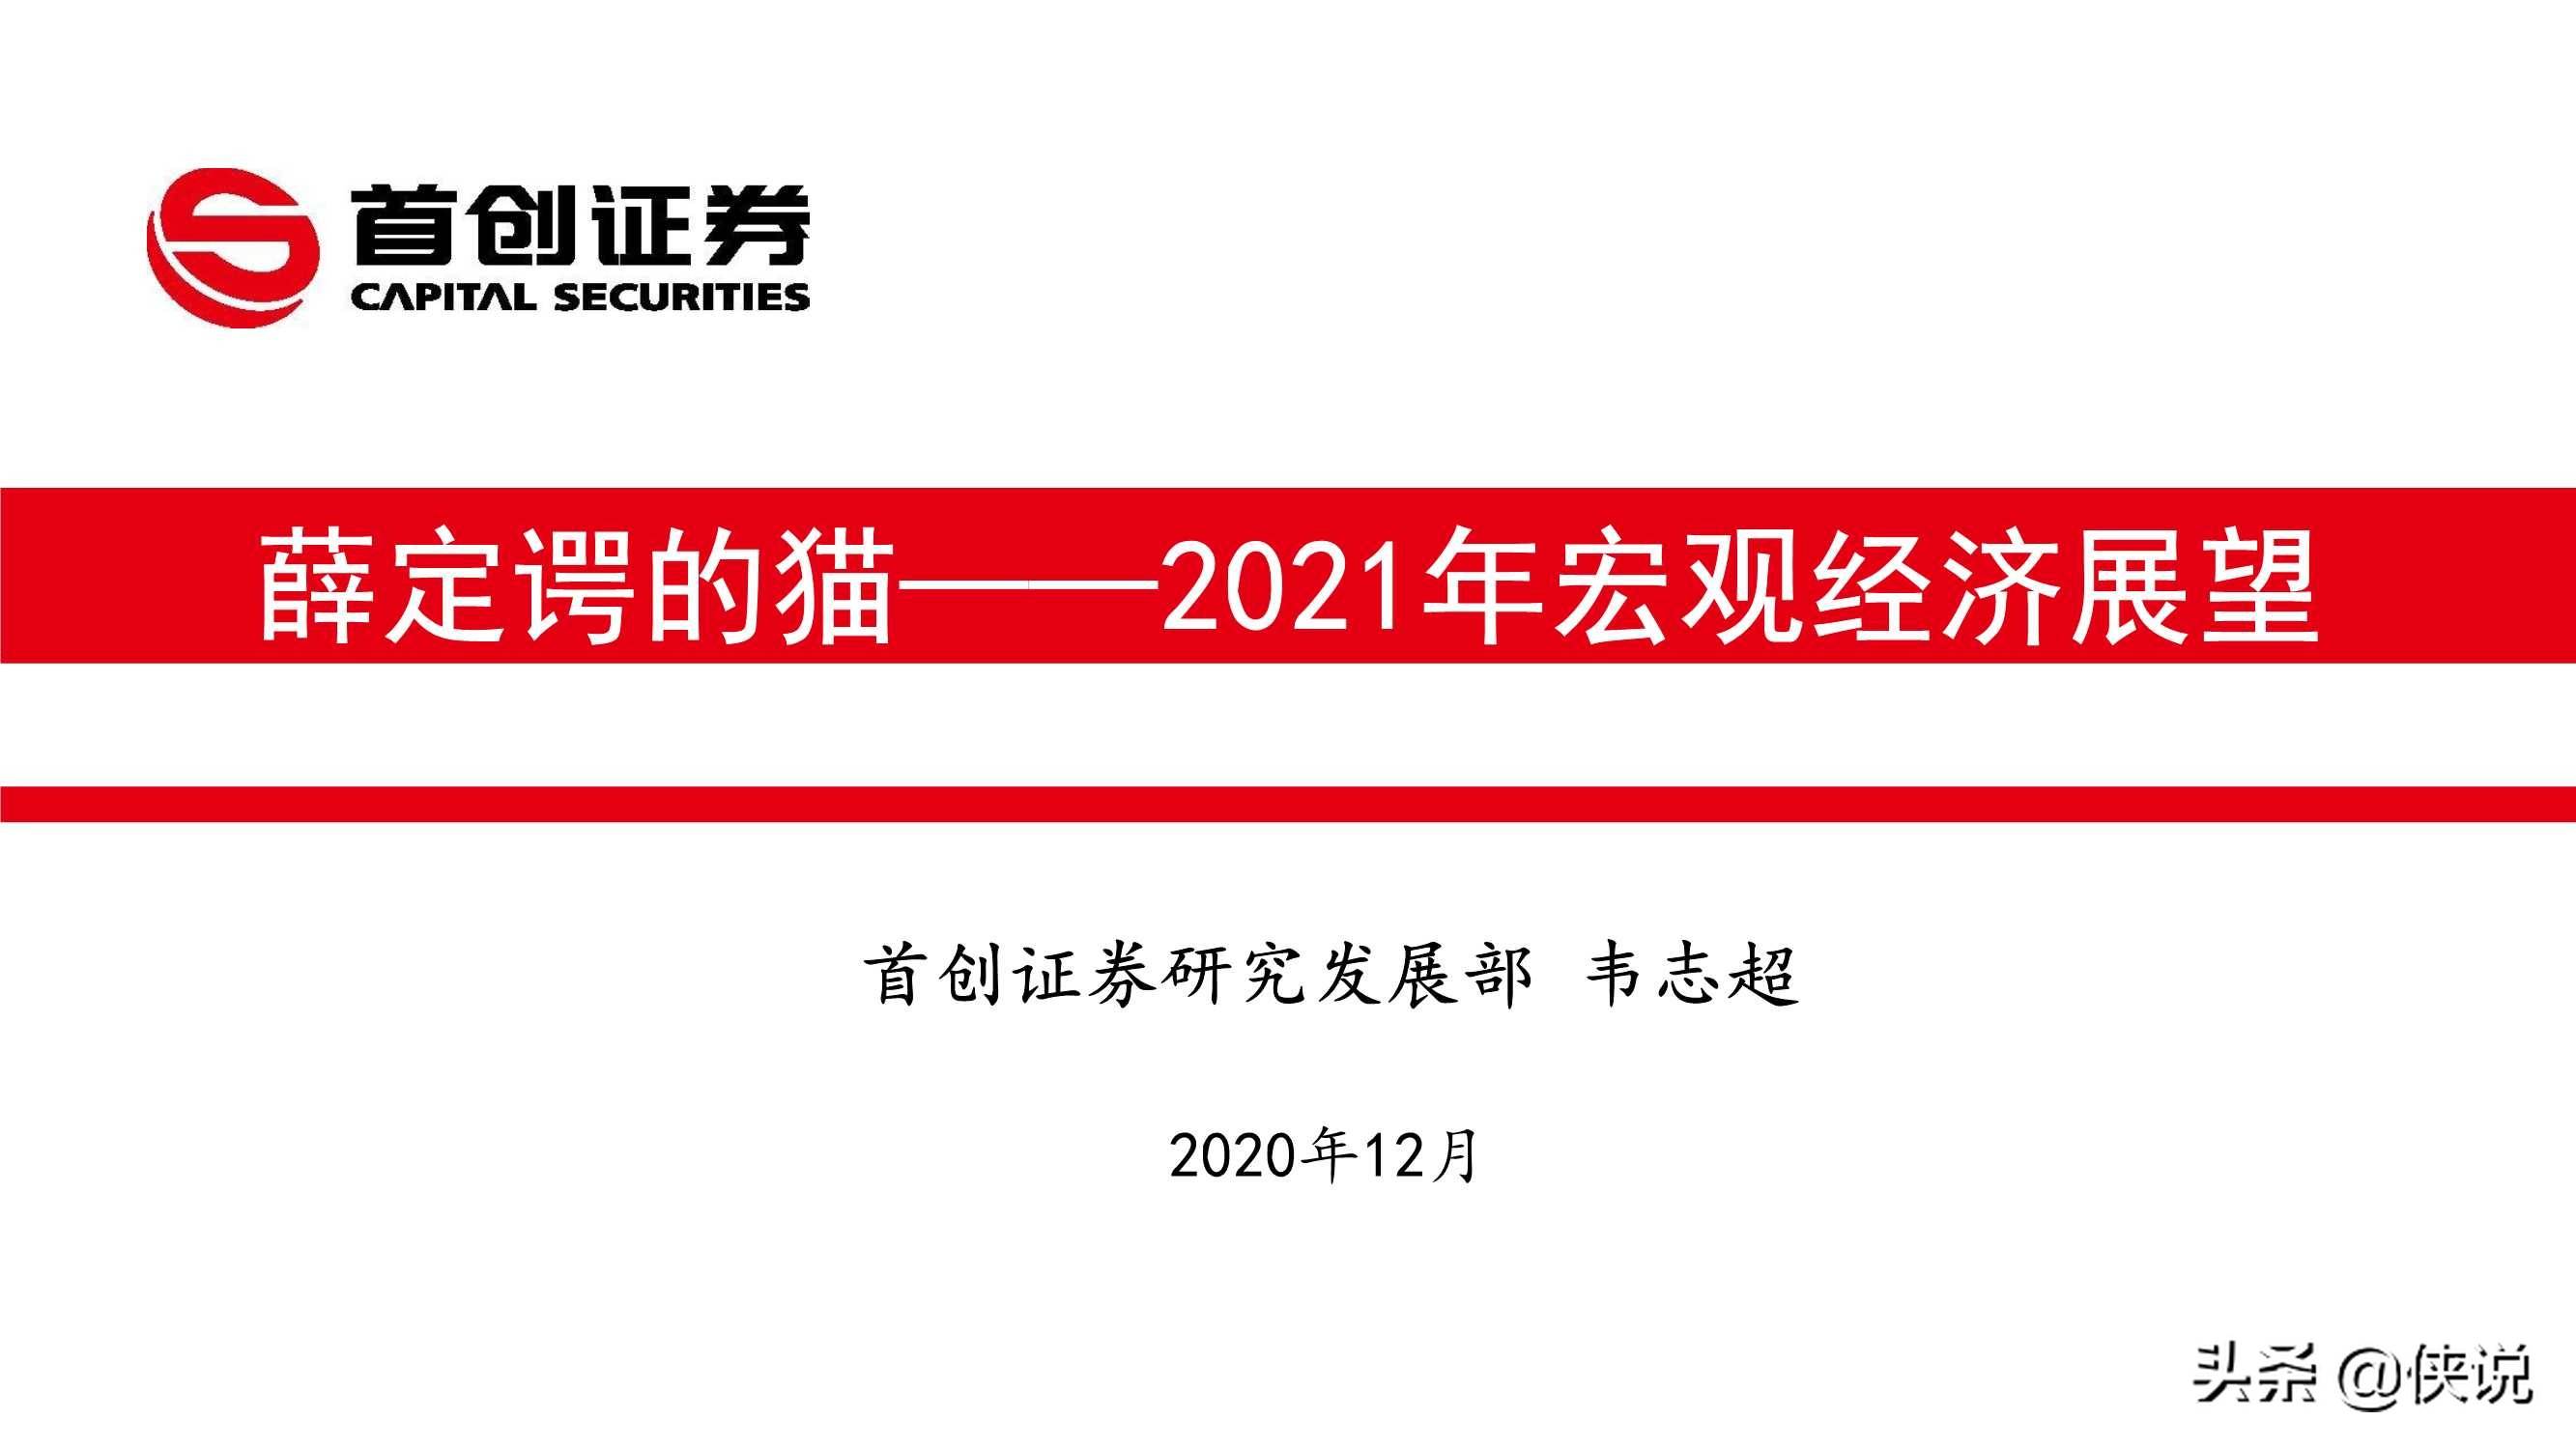 2021年宏观经济展望:薛定谔的猫(首创证券)